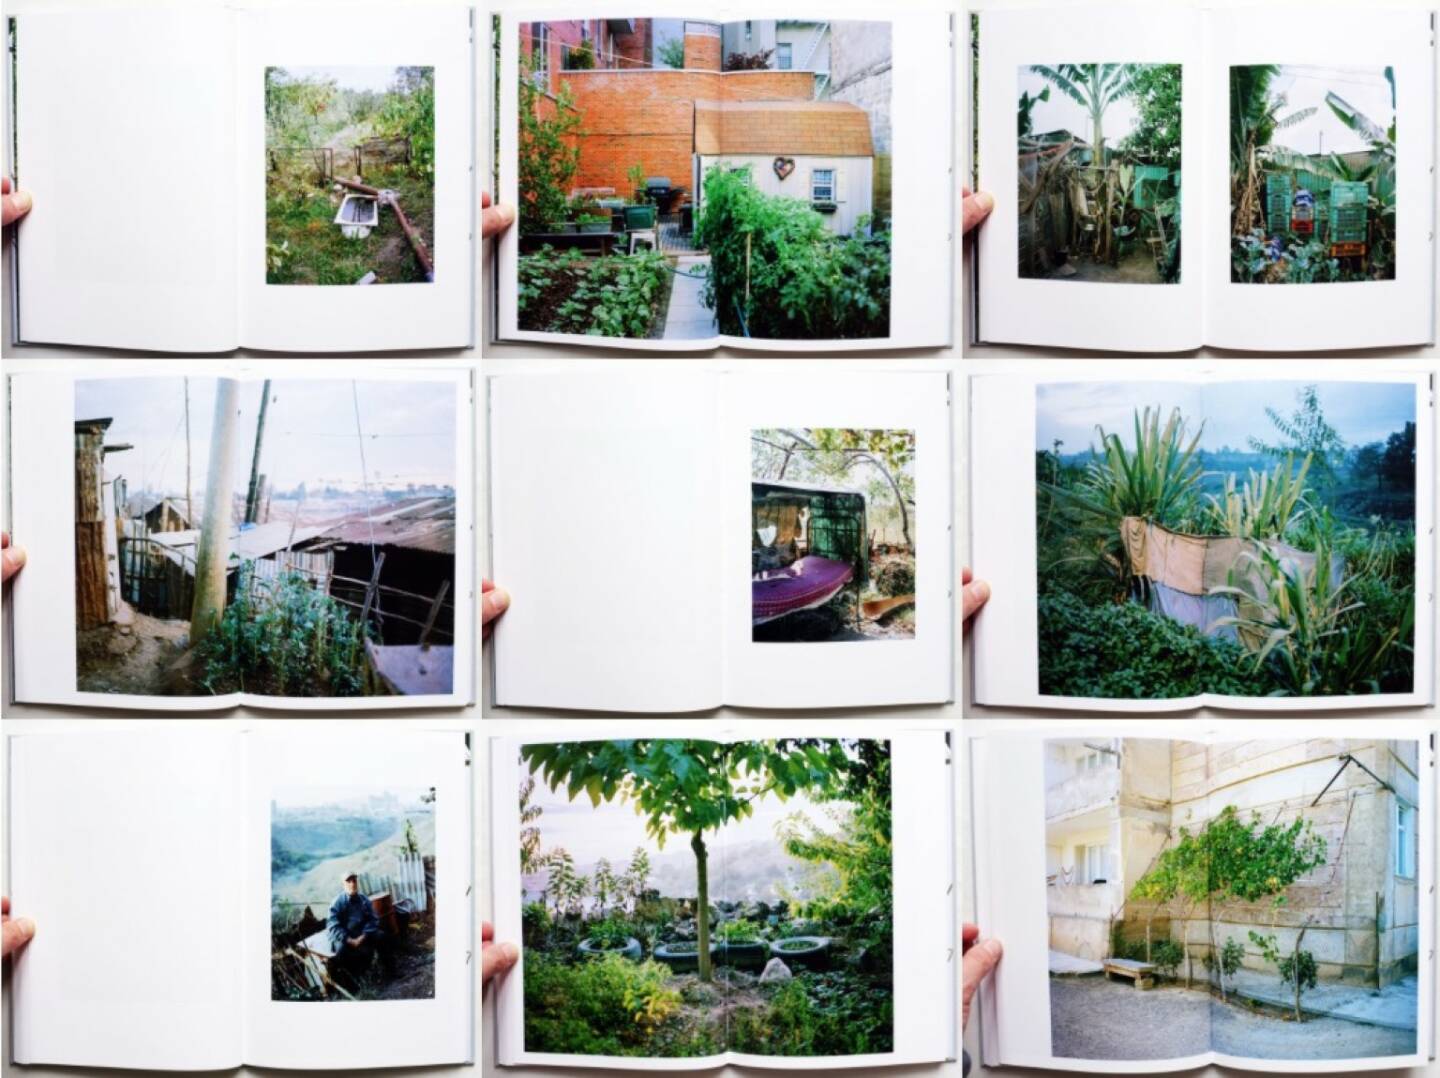 Jan Brykczynski - The Gardener, Dewi Lewis 2015, Beispielseiten, sample spreads - http://josefchladek.com/book/jan_brykczynski_-_the_gardener